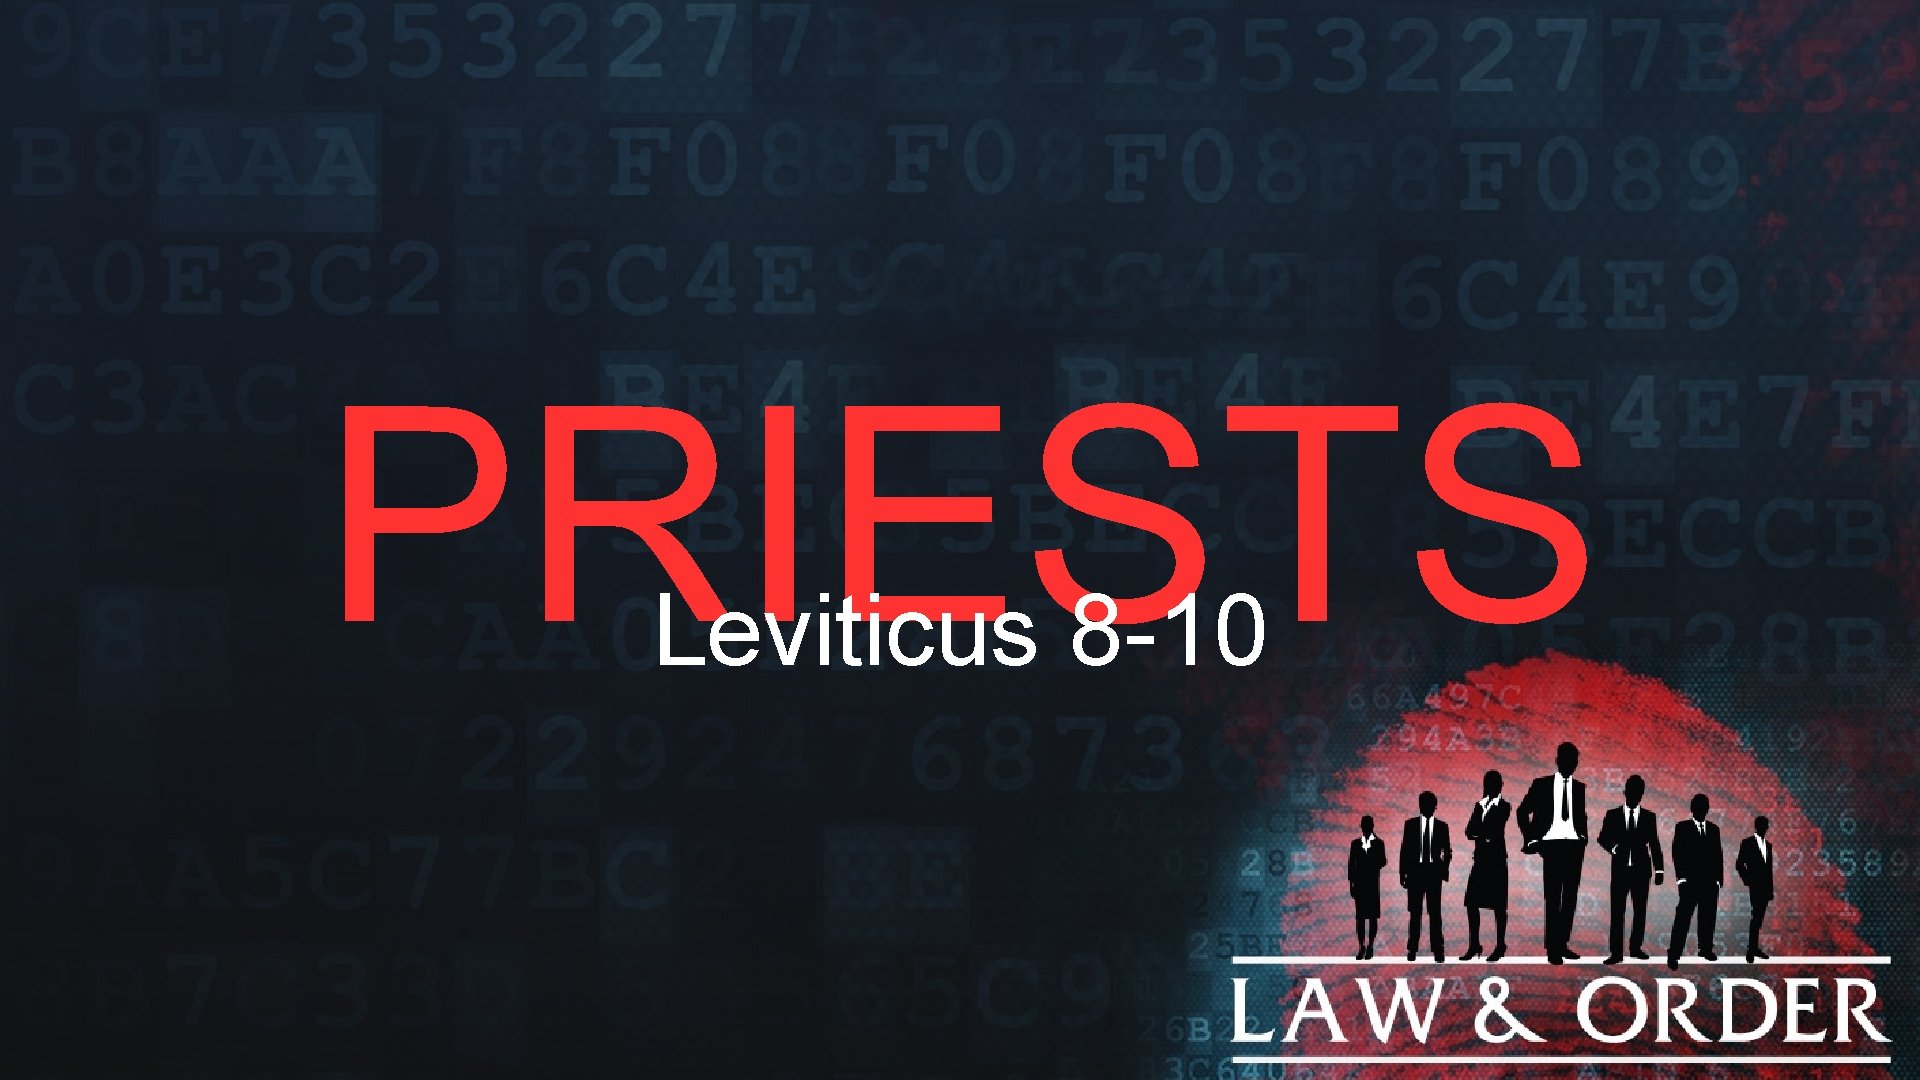 PRIESTS Leviticus 8 -10 